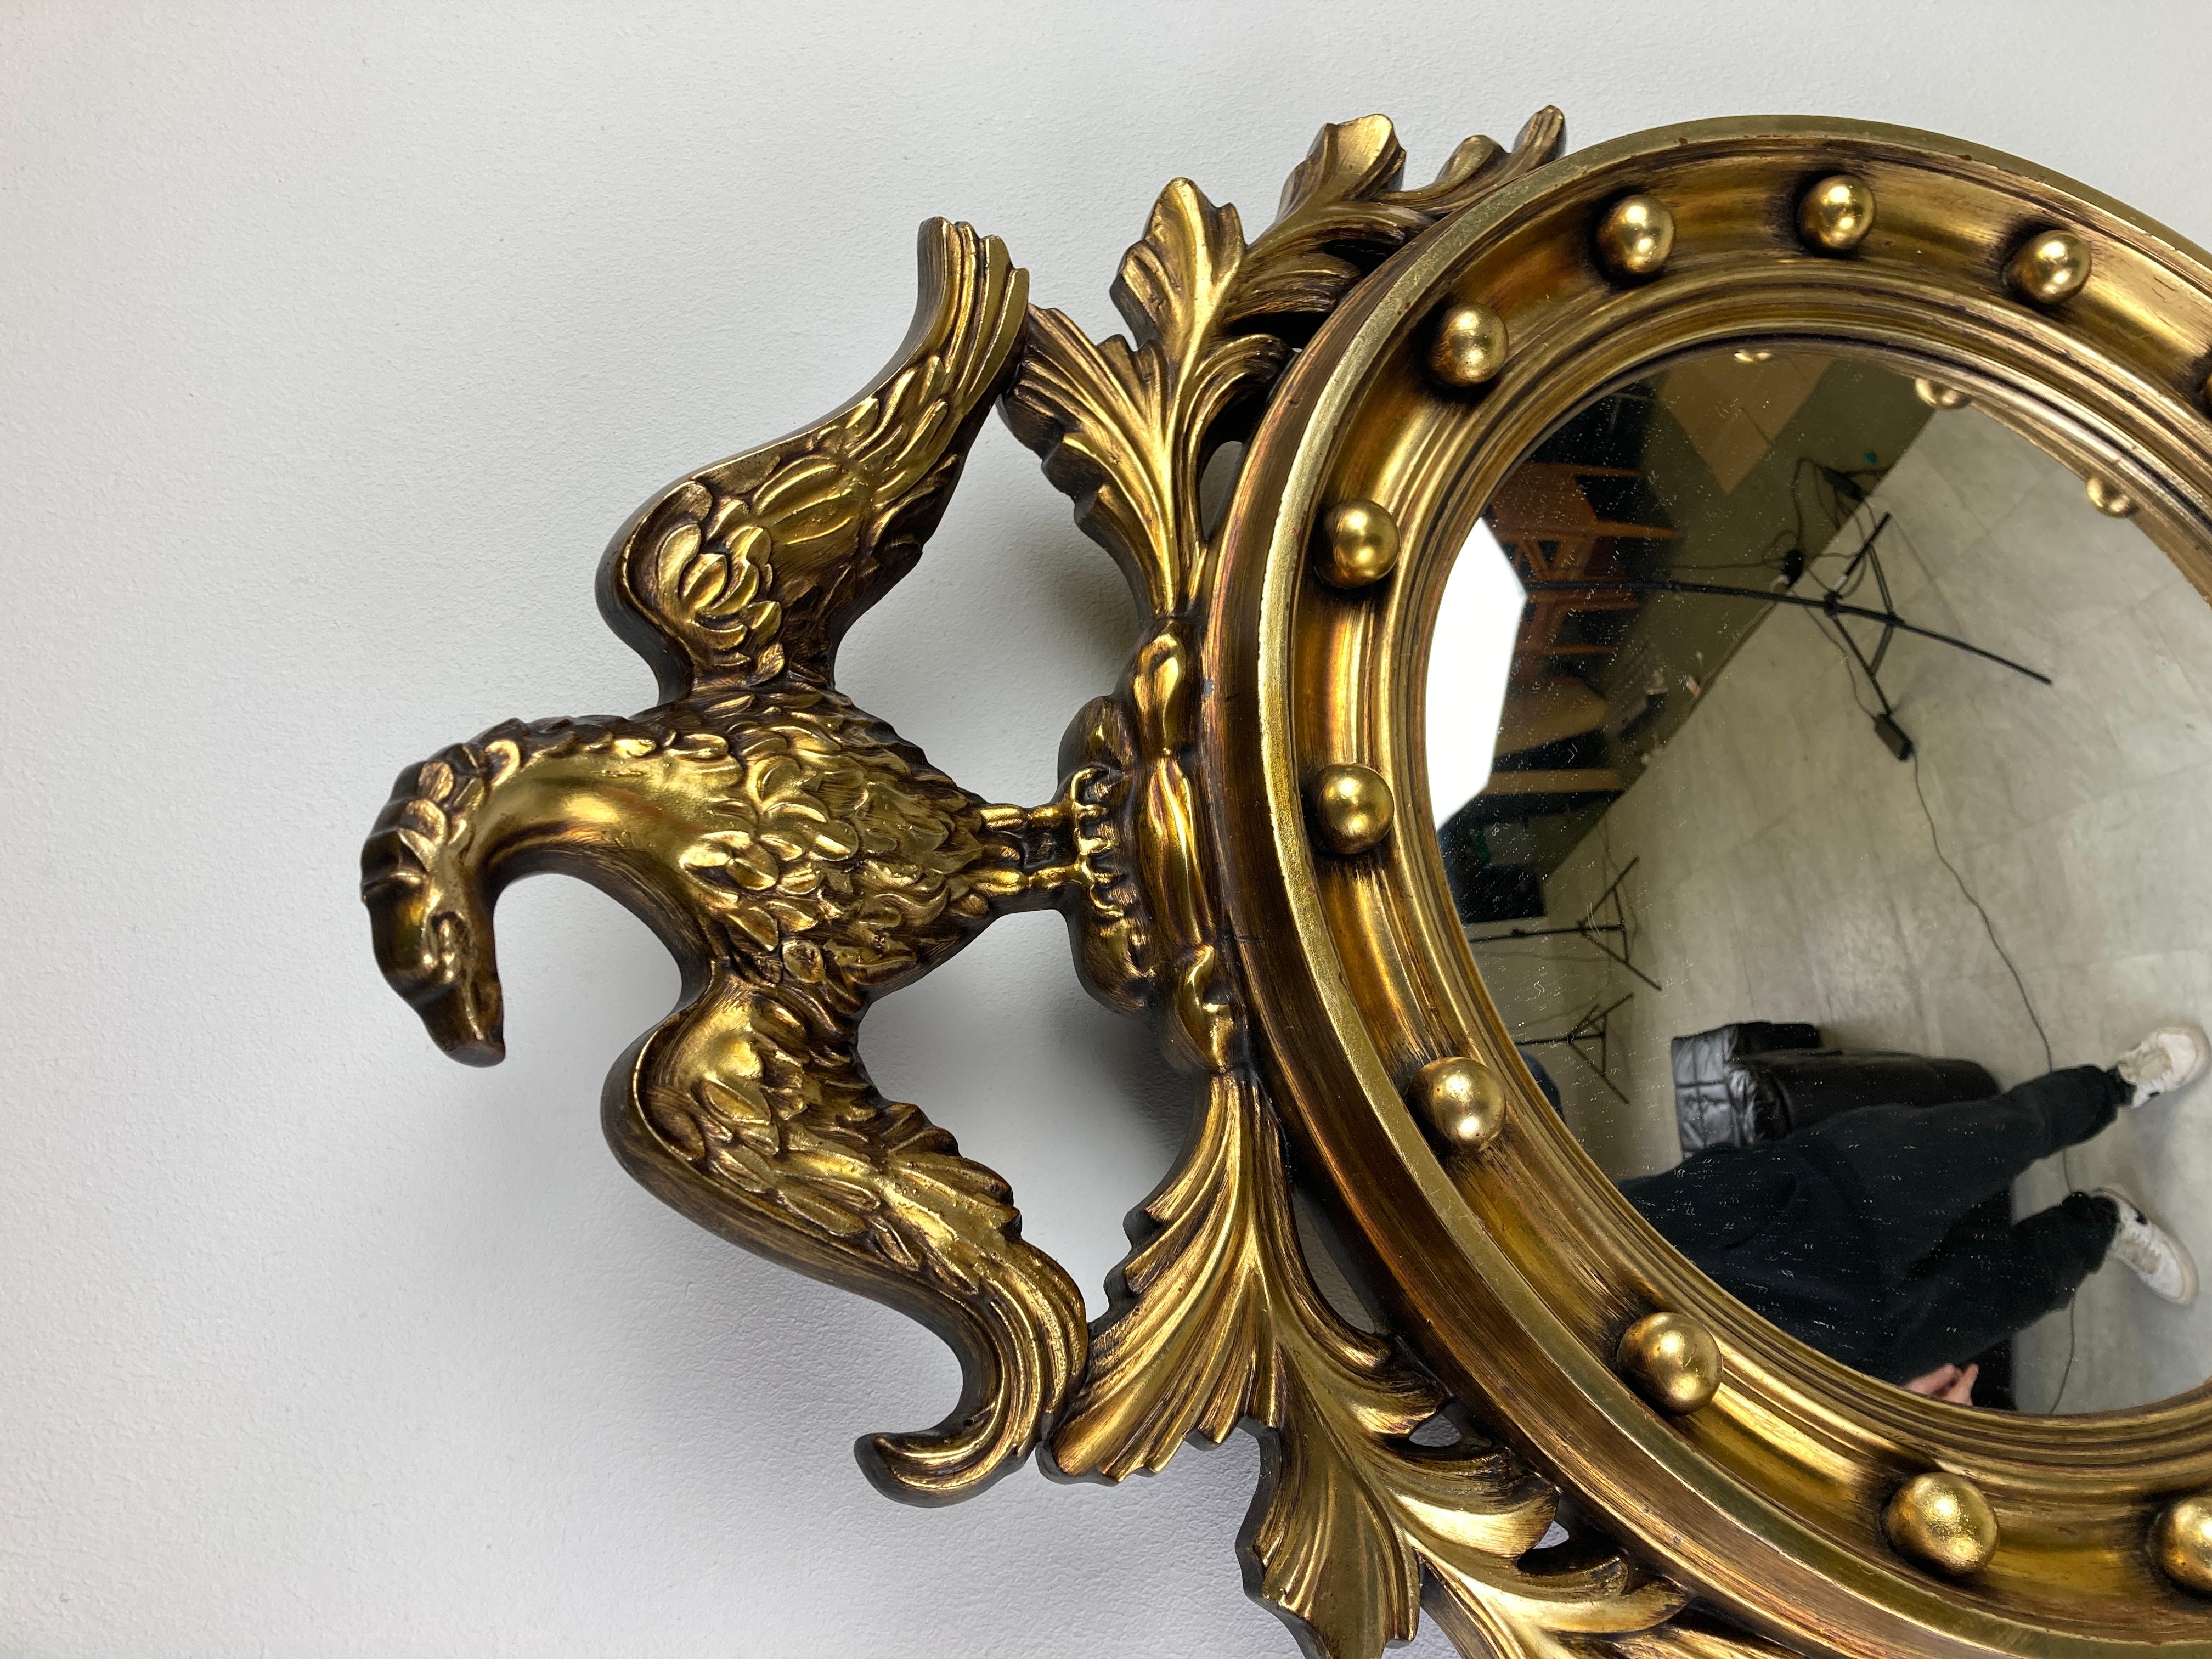 Miroir convexe en résine dorée avec un aigle - parfois appelé miroir 